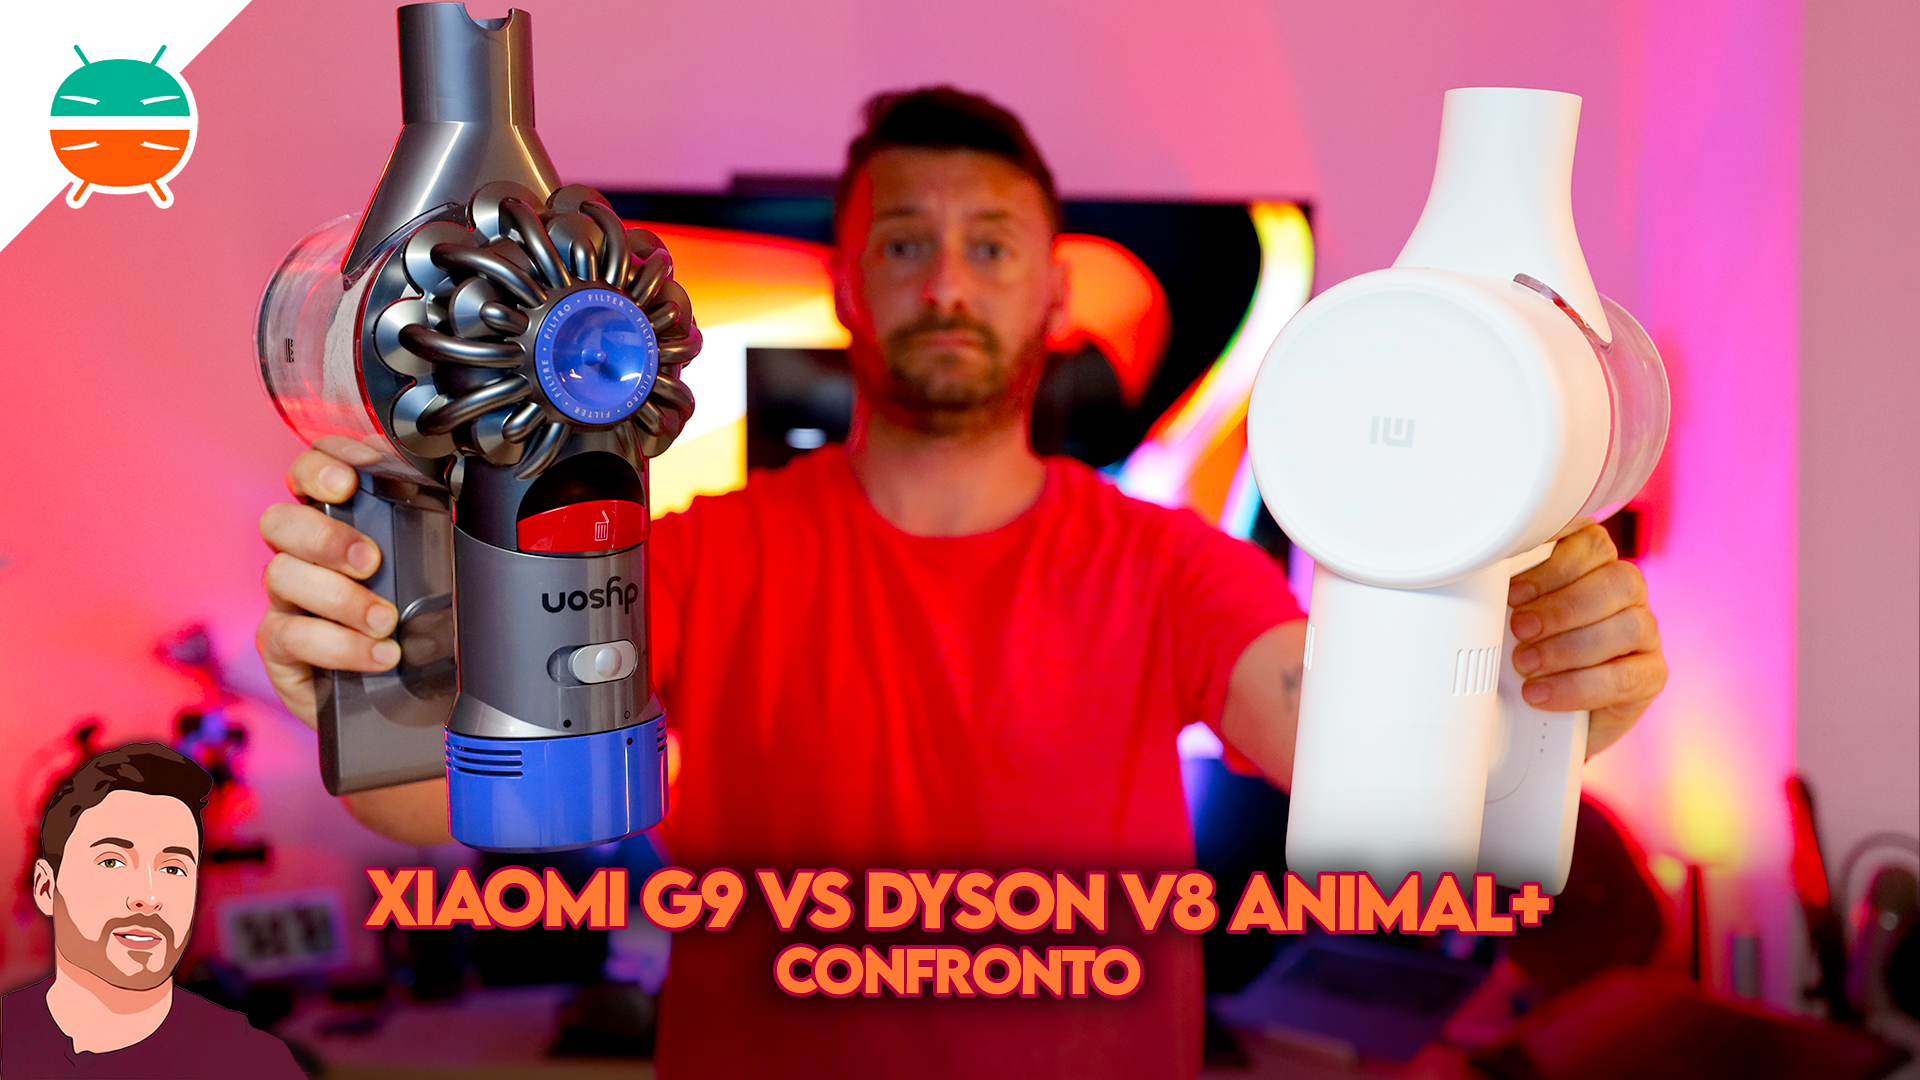 Confronto Xiaomi G9 Vs. Dyson V8 Animal+: vale la pena spendere di più? 